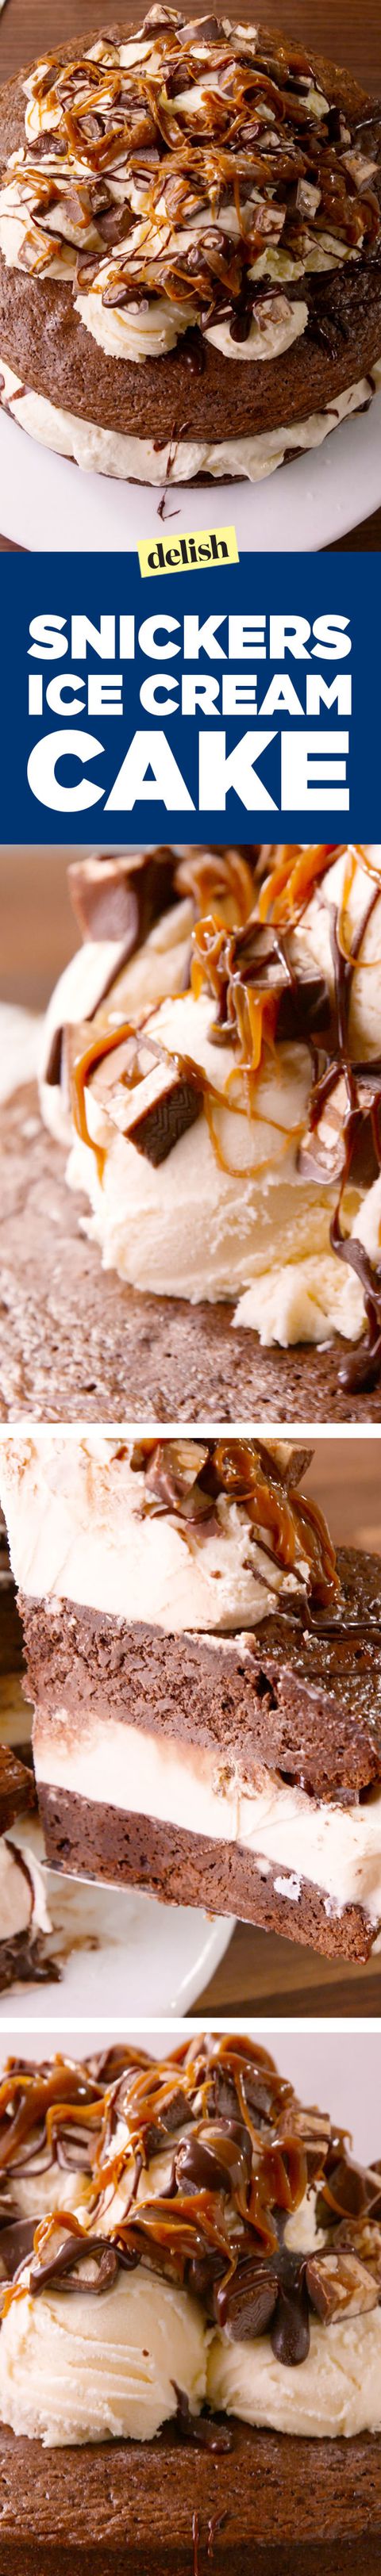 Сницкерс Brownie Ice Cream Cake Pin